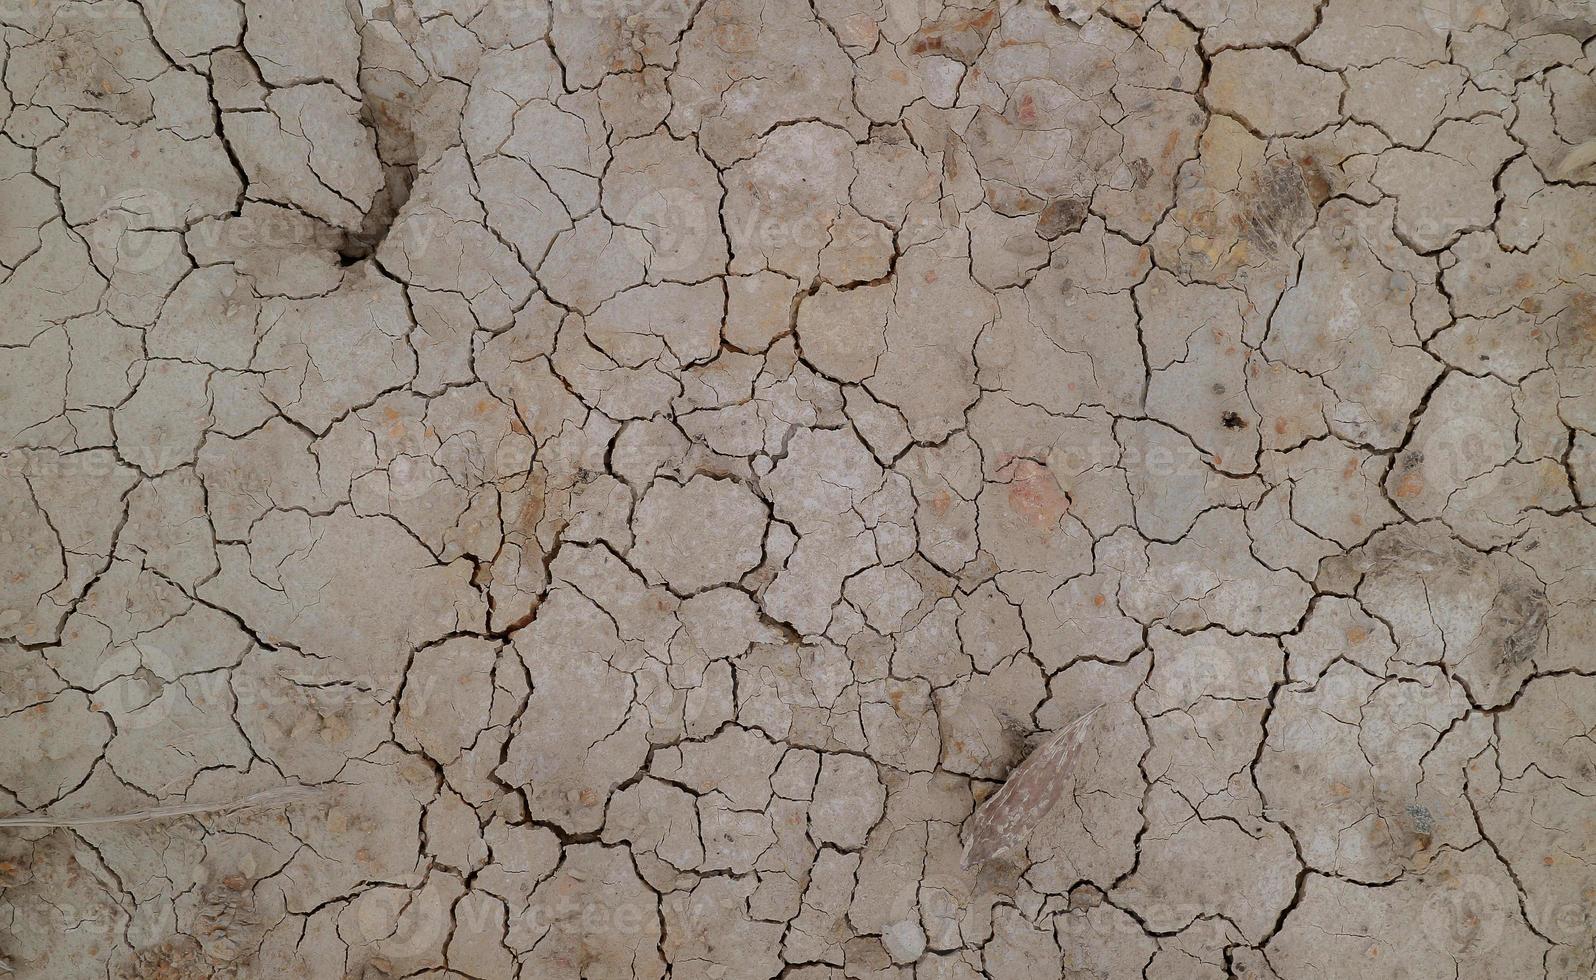 terreno incrinato a causa della siccità. la stagione secca fa seccare e screpolare il terreno foto